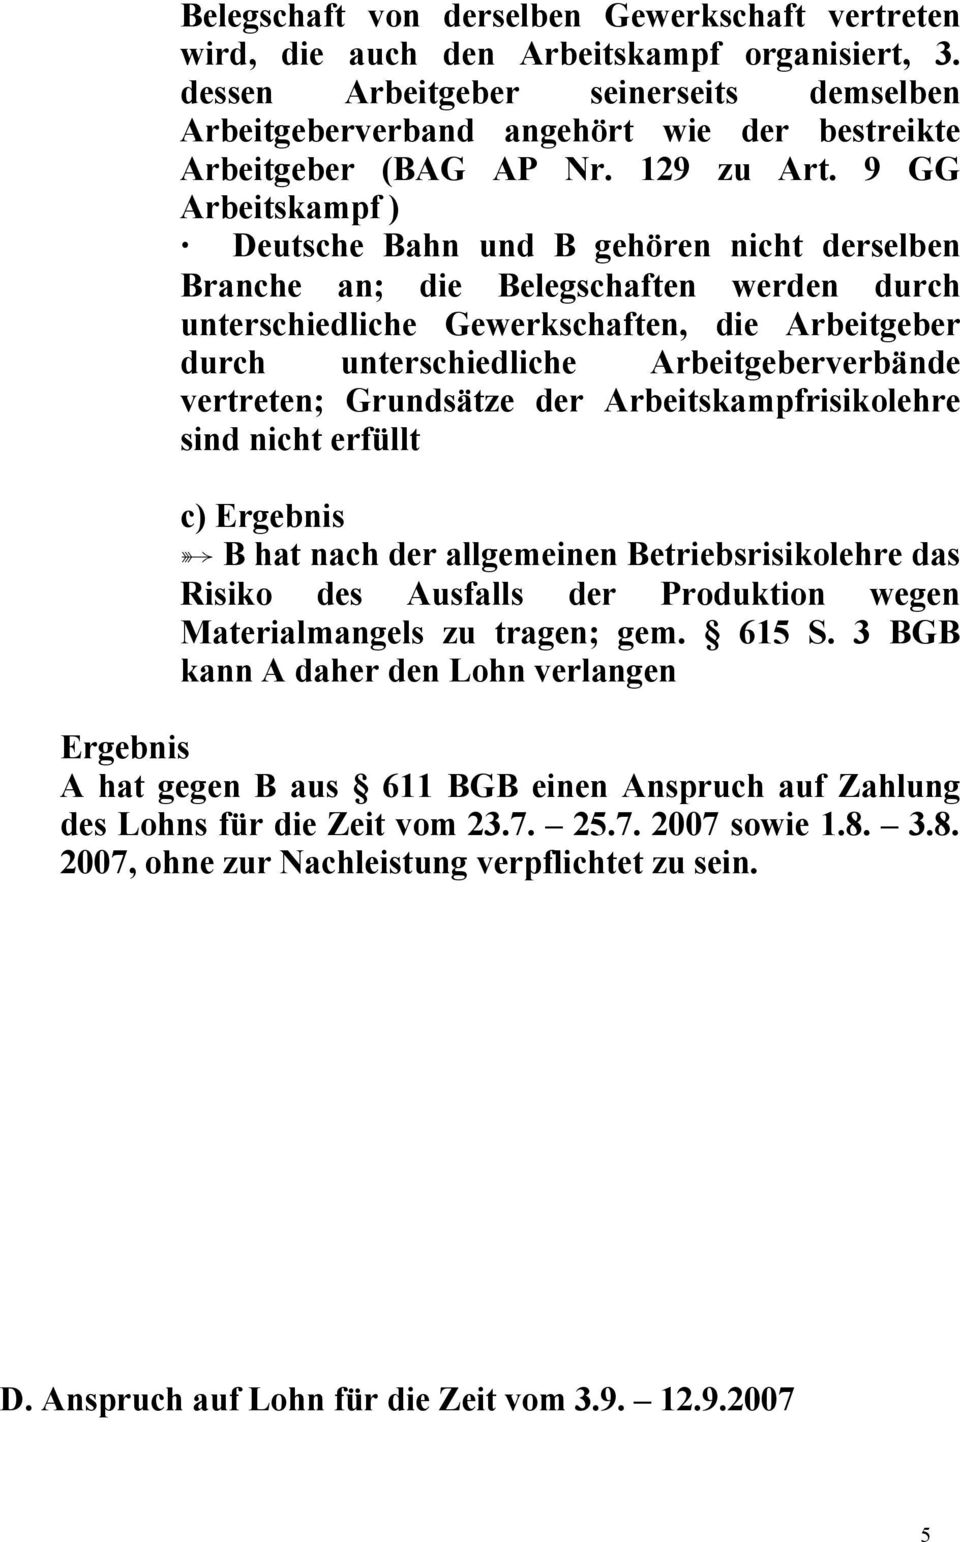 9 GG Arbeitskampf ) Deutsche Bahn und B gehören nicht derselben Branche an; die Belegschaften werden durch unterschiedliche Gewerkschaften, die Arbeitgeber durch unterschiedliche Arbeitgeberverbände